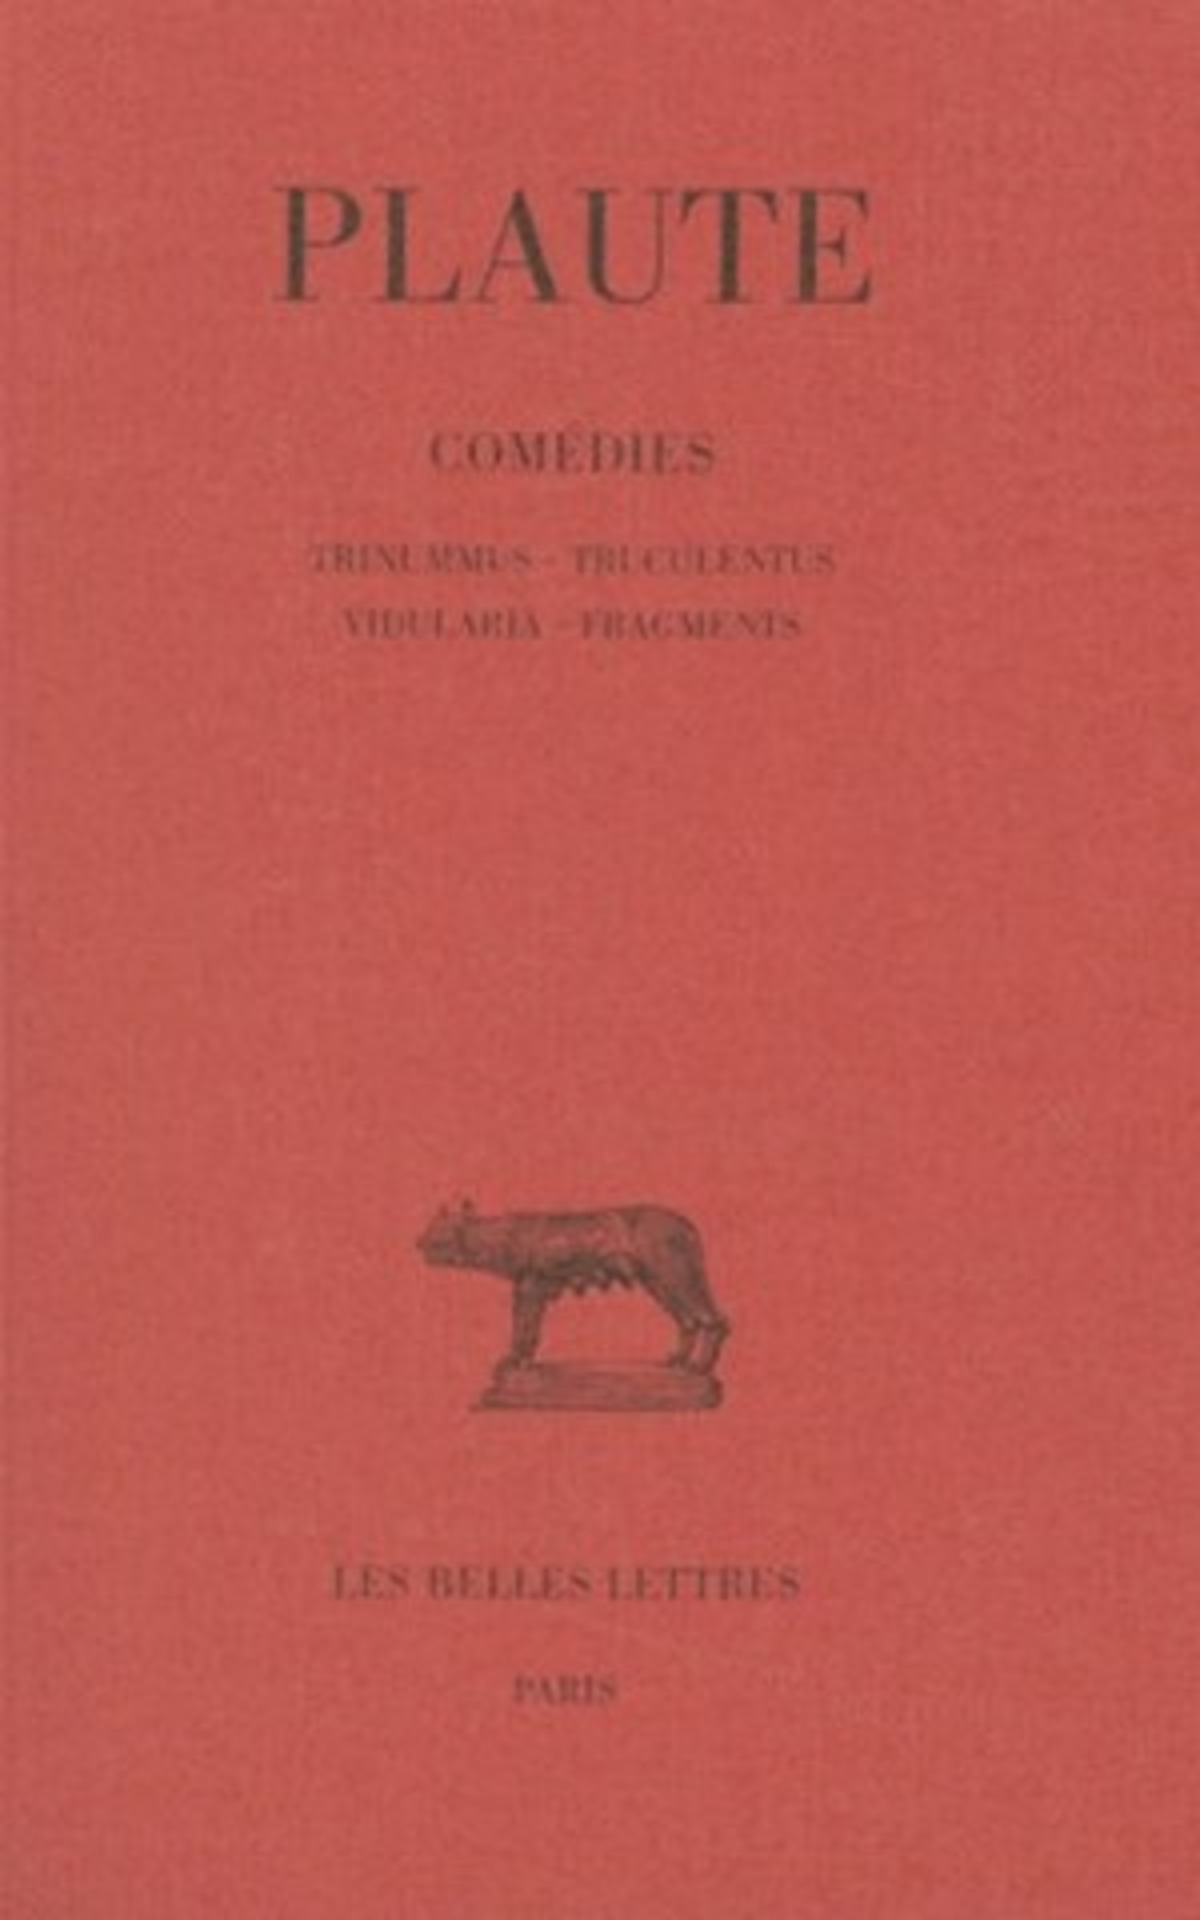 Comédies. Tome VII : Trinummus - Truculentus - Vidularia - Fragments